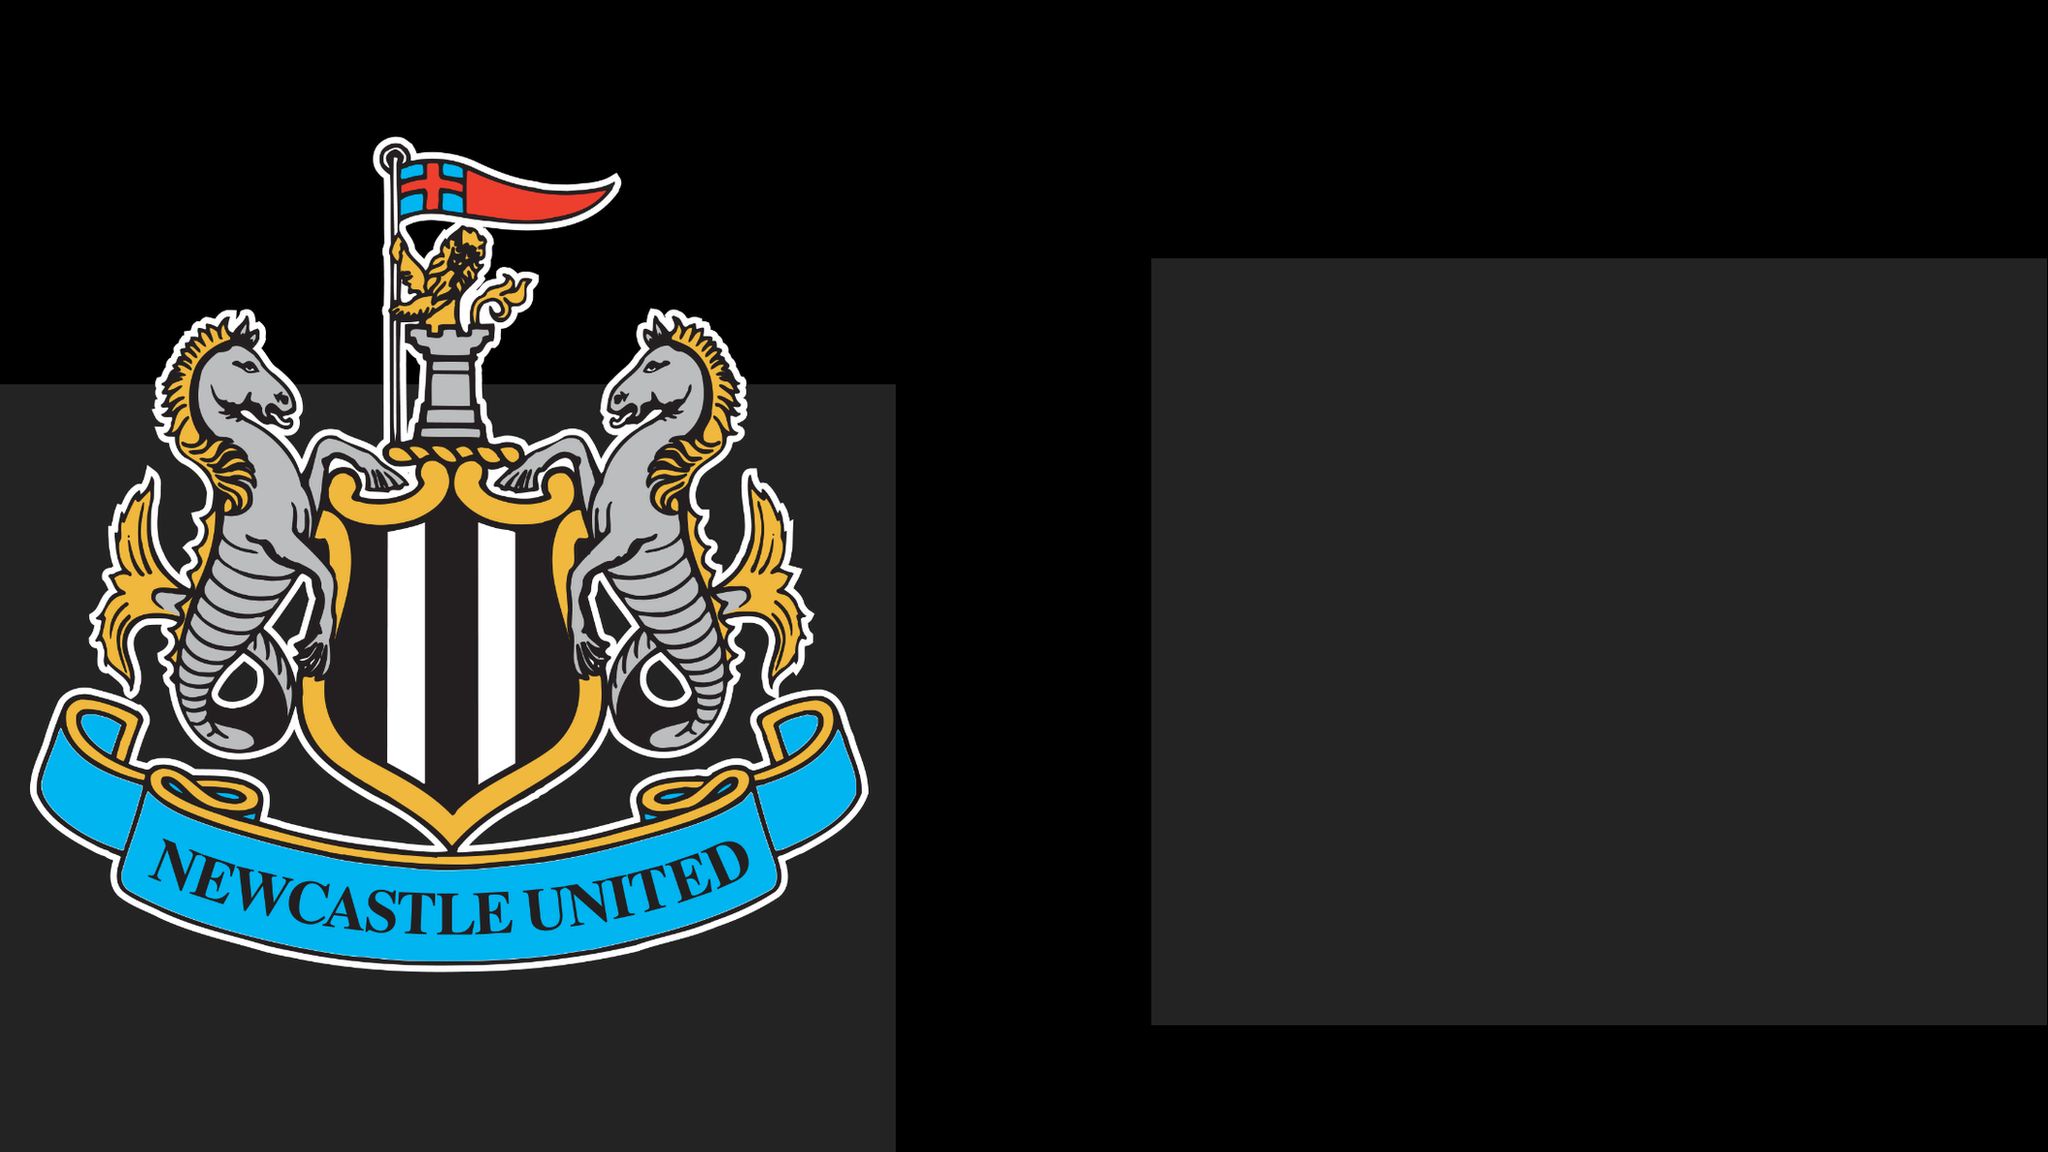 Newcastle United club badge